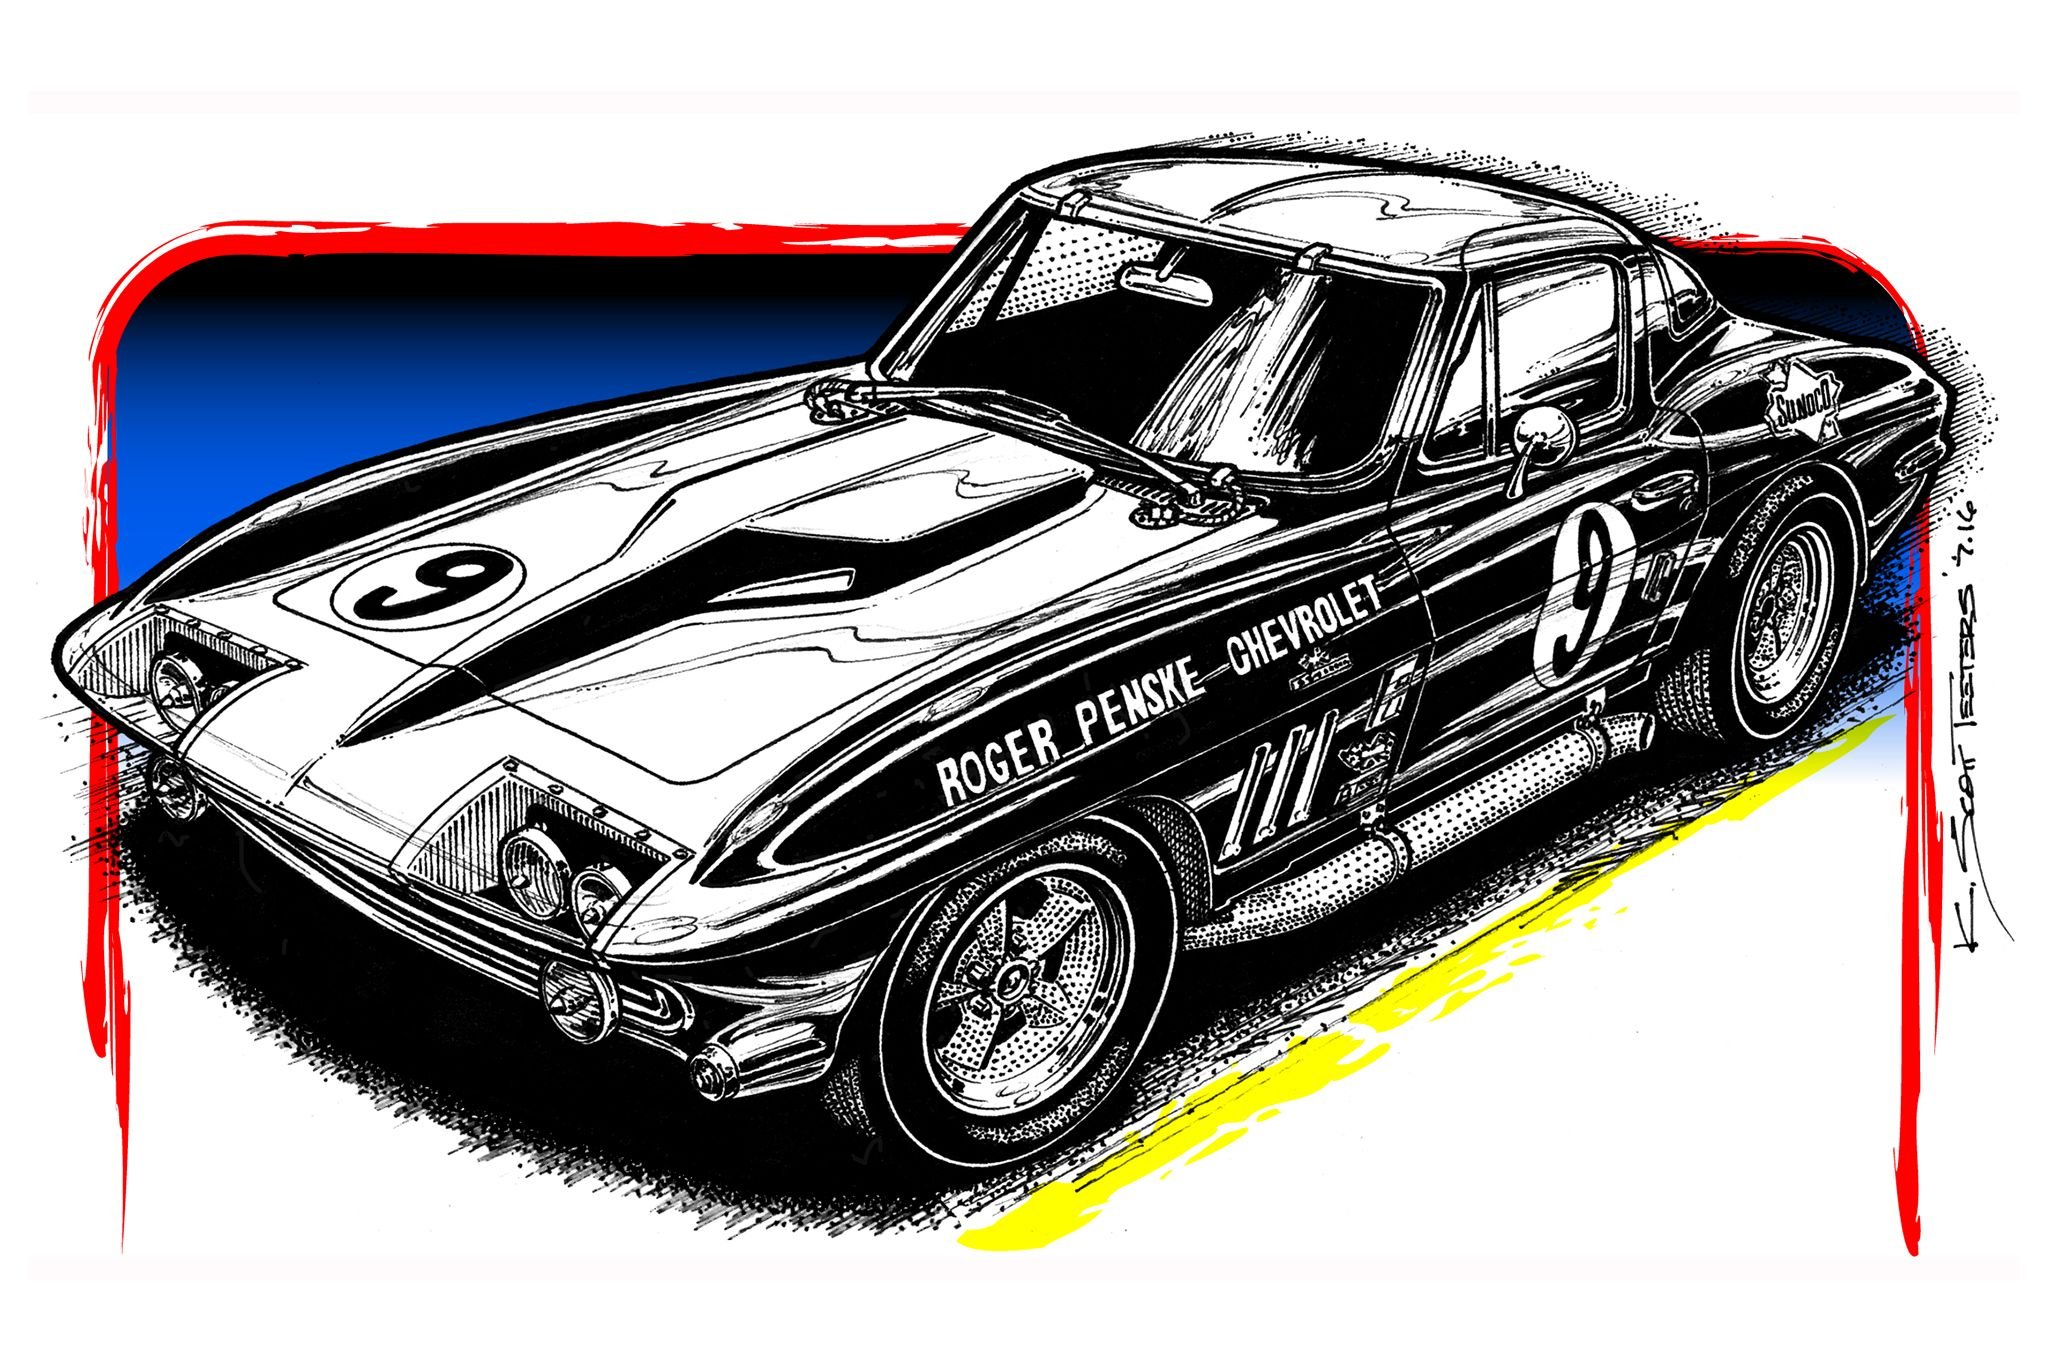 1966, 427, Corvette, Racer, Muscle, Classic, Hot, Rod, Rods, Hotrod, Custom, Chevy, Chevrolet Wallpaper